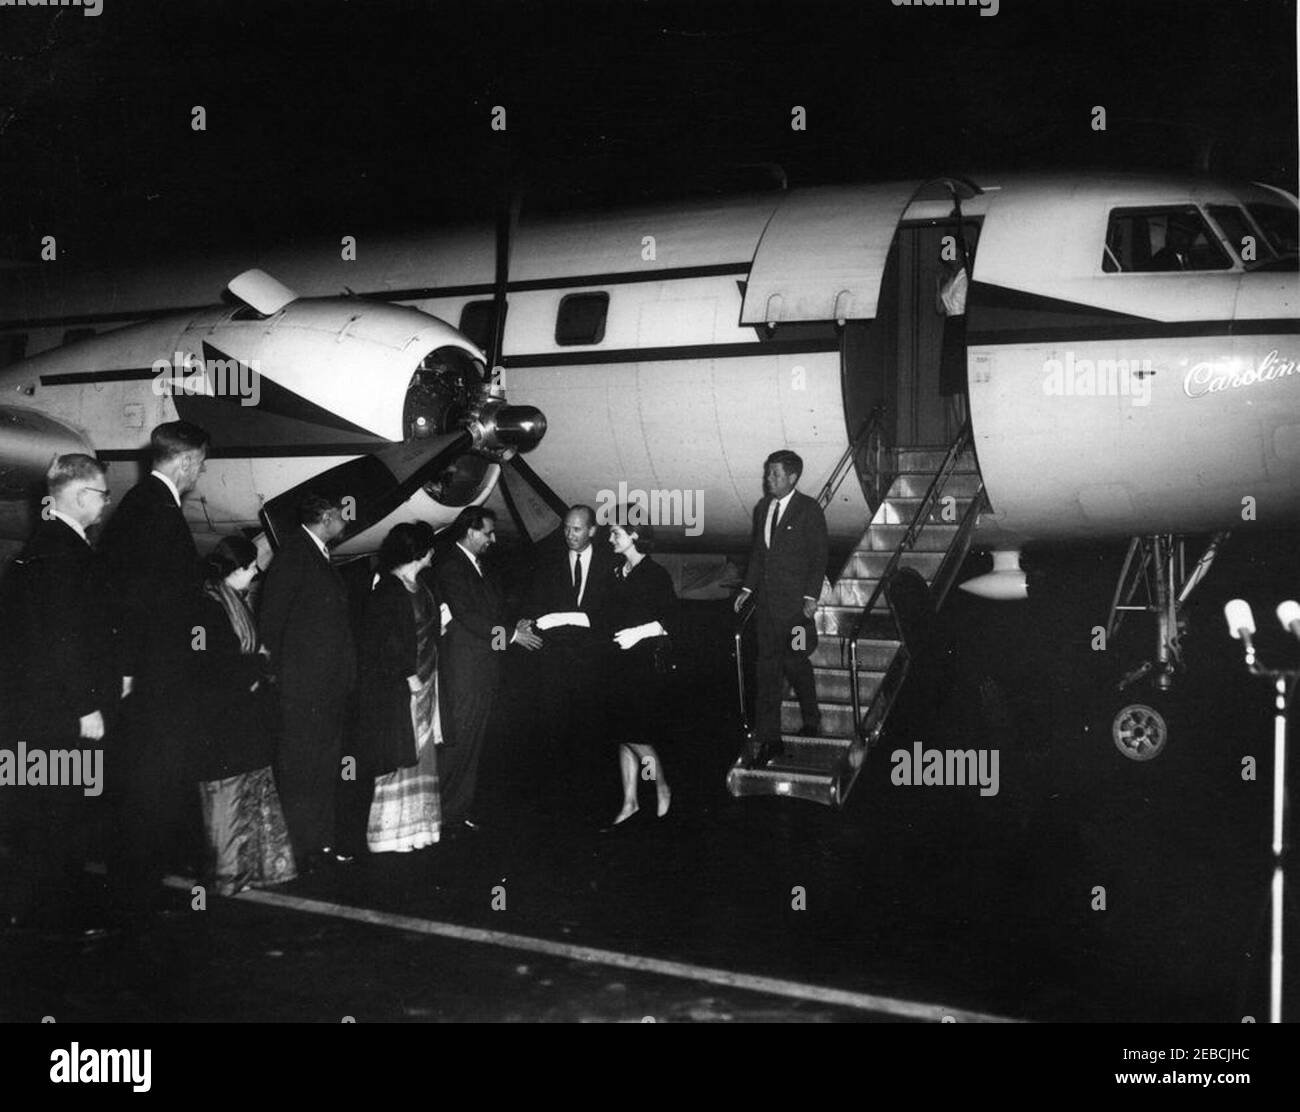 La Presidenta Kennedy saluda a la primera Dama Jacqueline Kennedy (JBK) en la base de la Fuerza Aérea Andrews al regresar de su viaje a la India y Pakistán, a las 7:25 PM. Un grupo saluda a la primera Dama Jacqueline Kennedy cuando regresa de su viaje a la India y Pakistán. L-R) Subsecretario de Estado para Asuntos del cercano Oriente y Asia Meridional Phillips Talbot; Embajador de los Estados Unidos en la India John Kenneth Galbraith; Shobha u201cForiu201d Nehru (esposa de Braj Kumar Nehru, Embajador de la India en los Estados Unidos); Embajador Nehru; Shereen Ahmed (esposa de Aziz Ahmed, Embajador de Pakistán en los Estados Unidos); A. Foto de stock